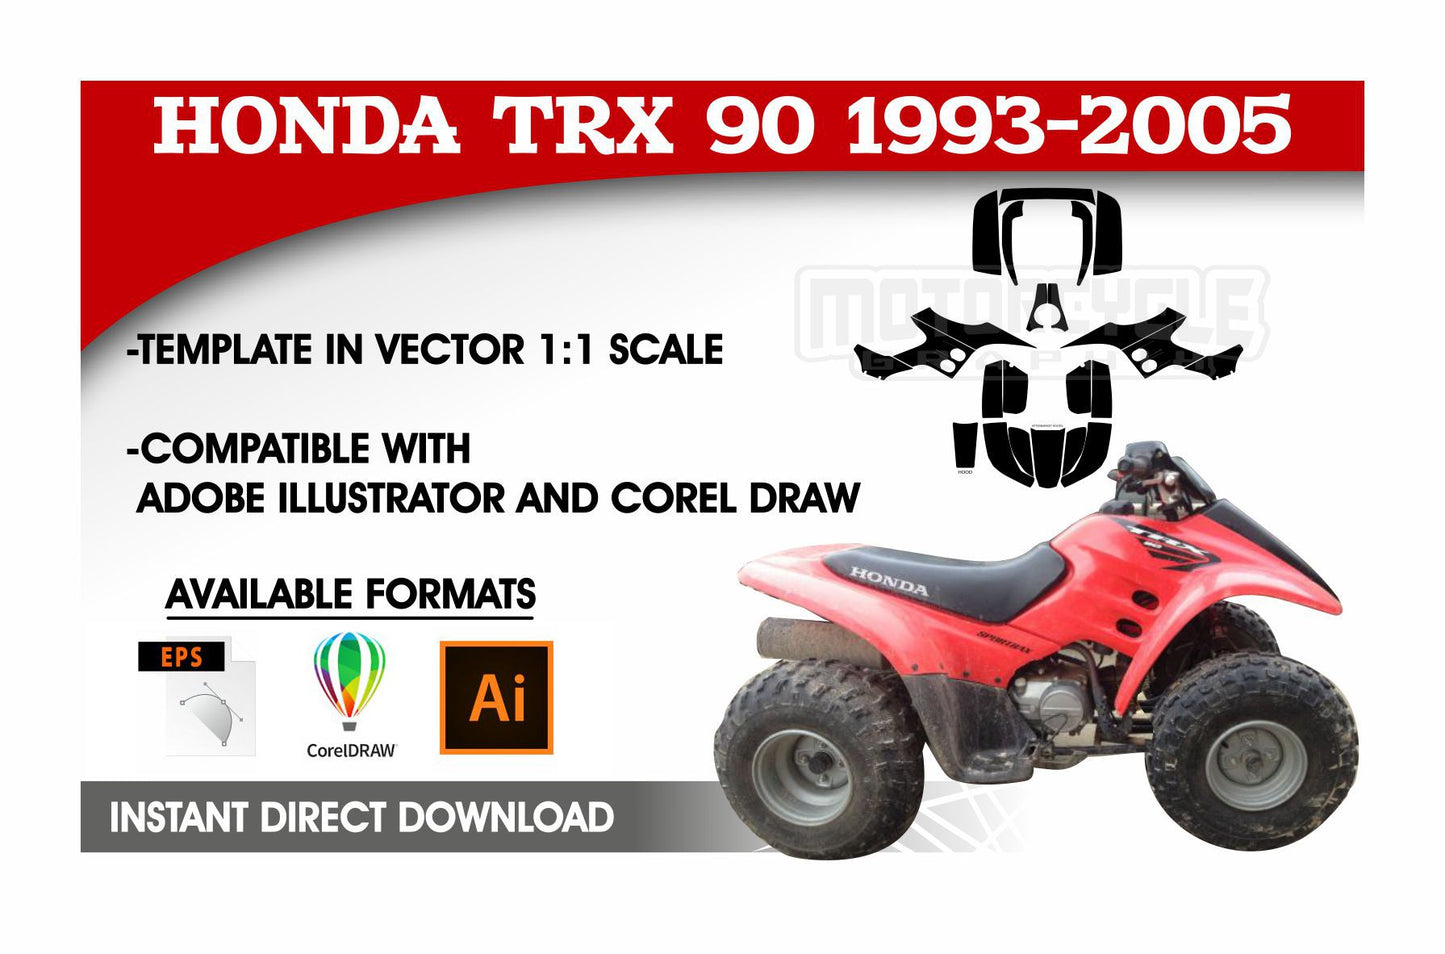 HONDA TRX 90 1993-2005